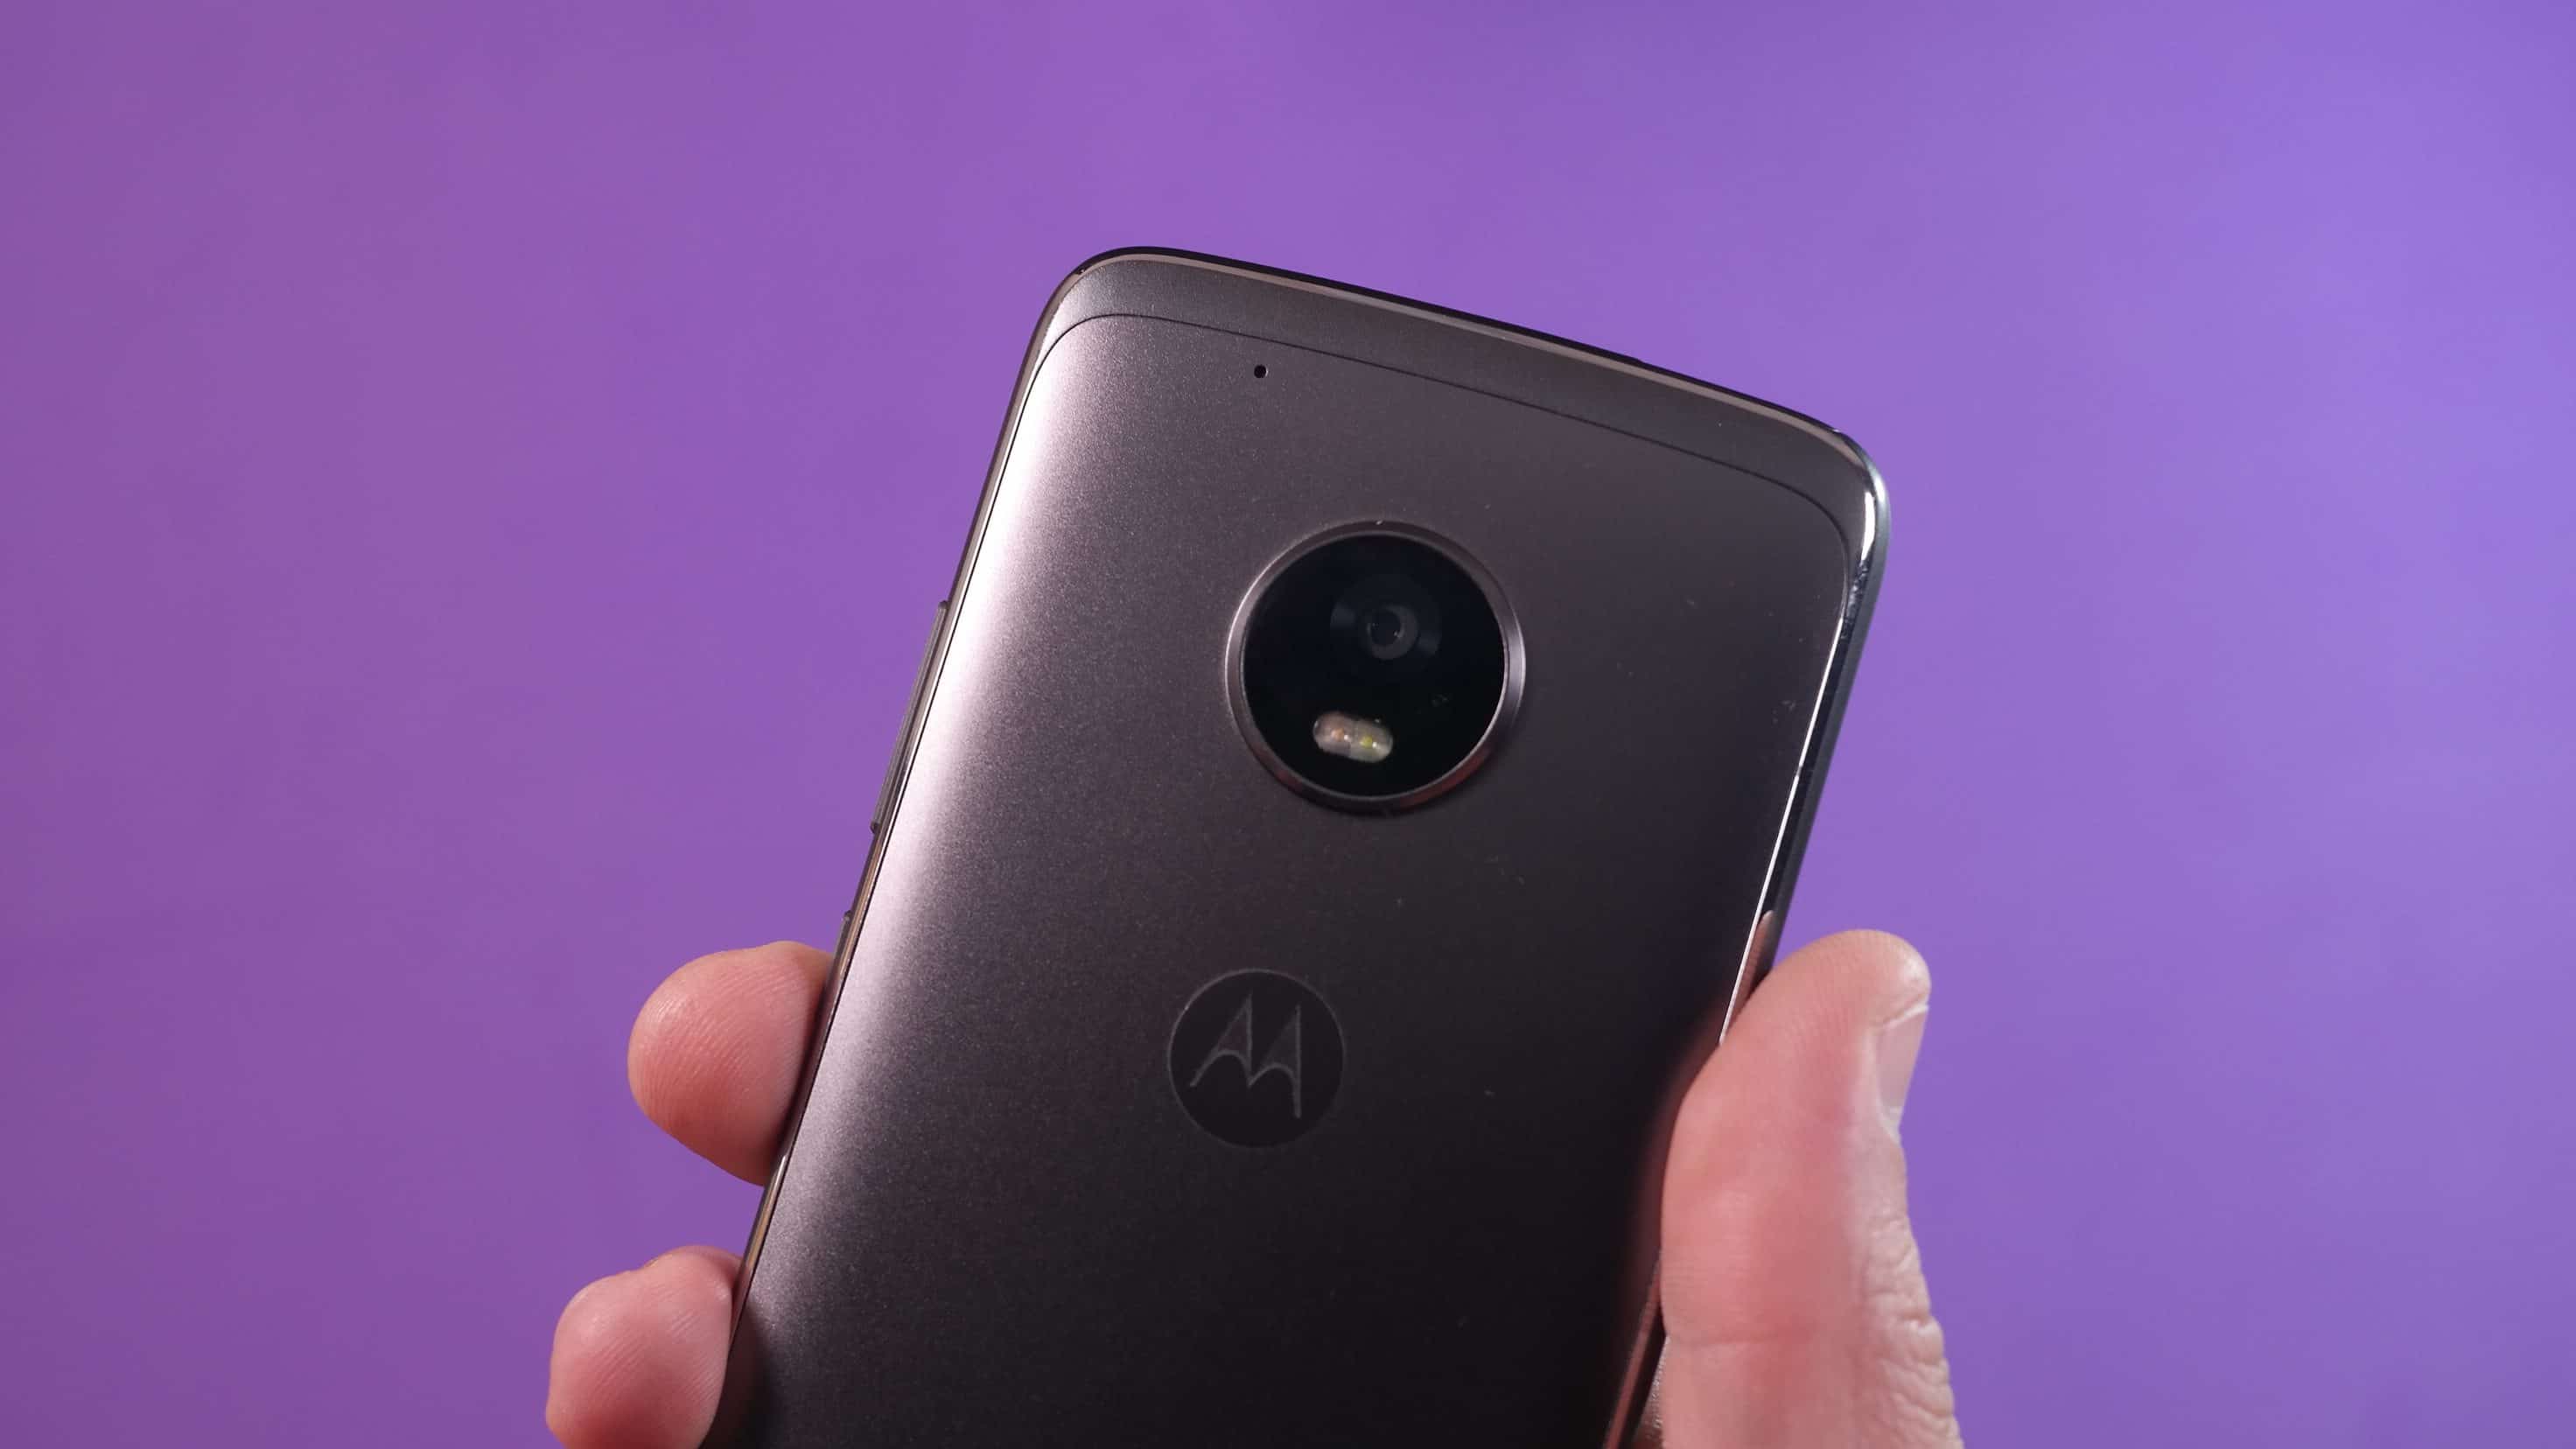 Review Moto G5 Plus camera